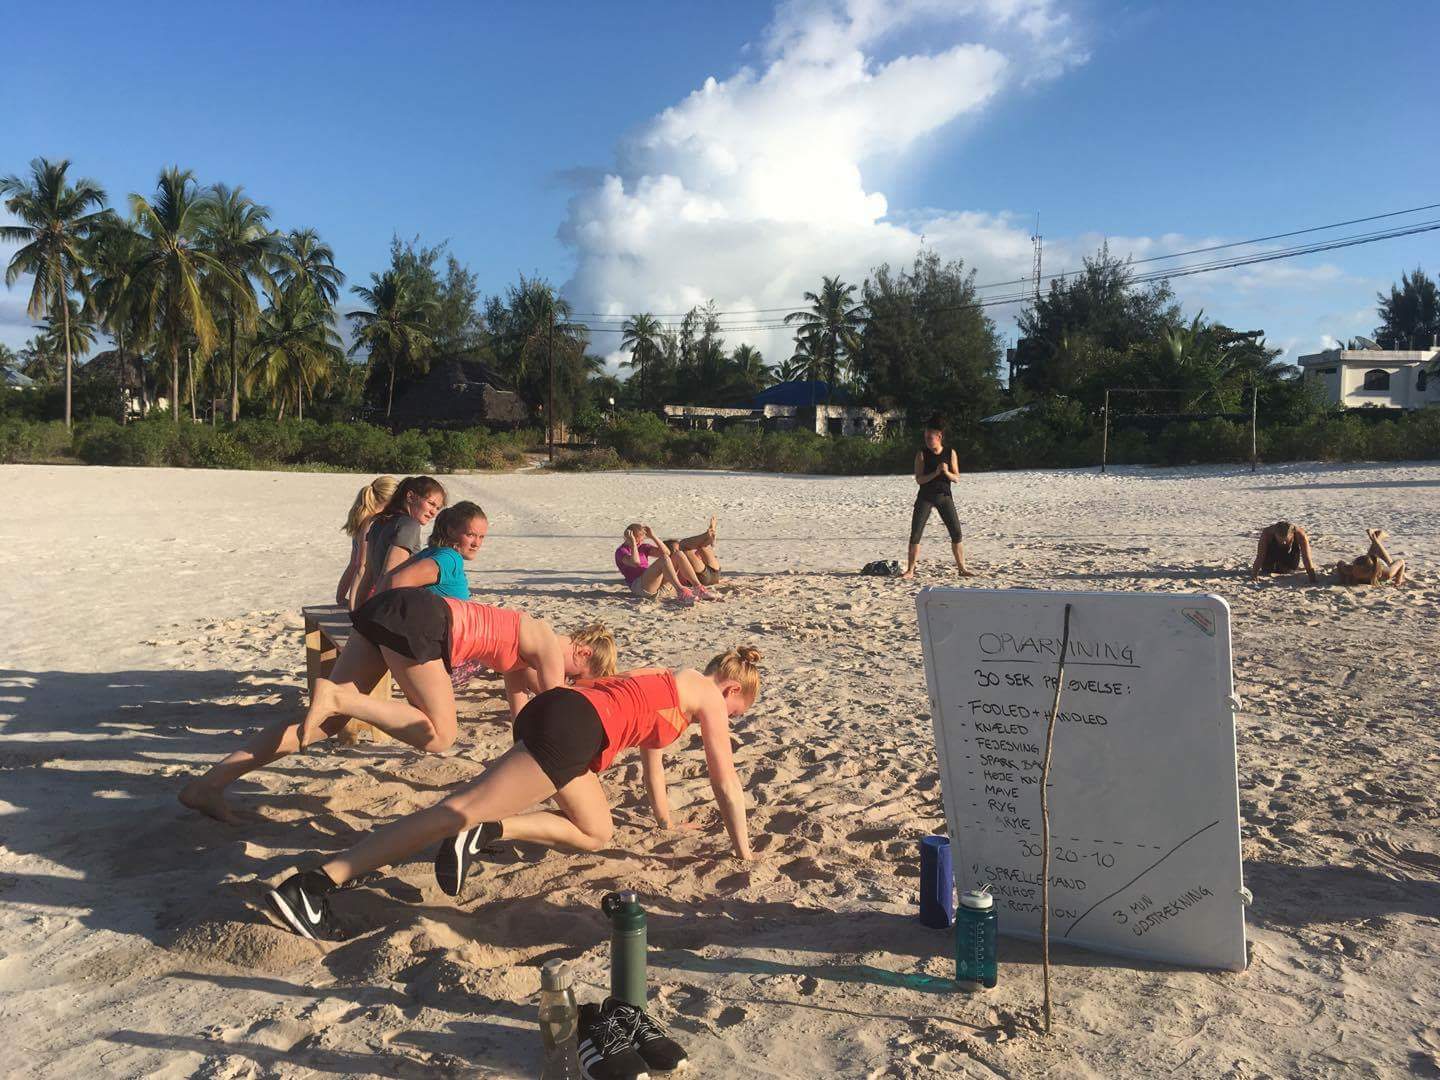 elever dyrker idræt på stranden. Vælg Zanzibar Højskolen hvis du drømmer om et ophold på en idrætshøjskole